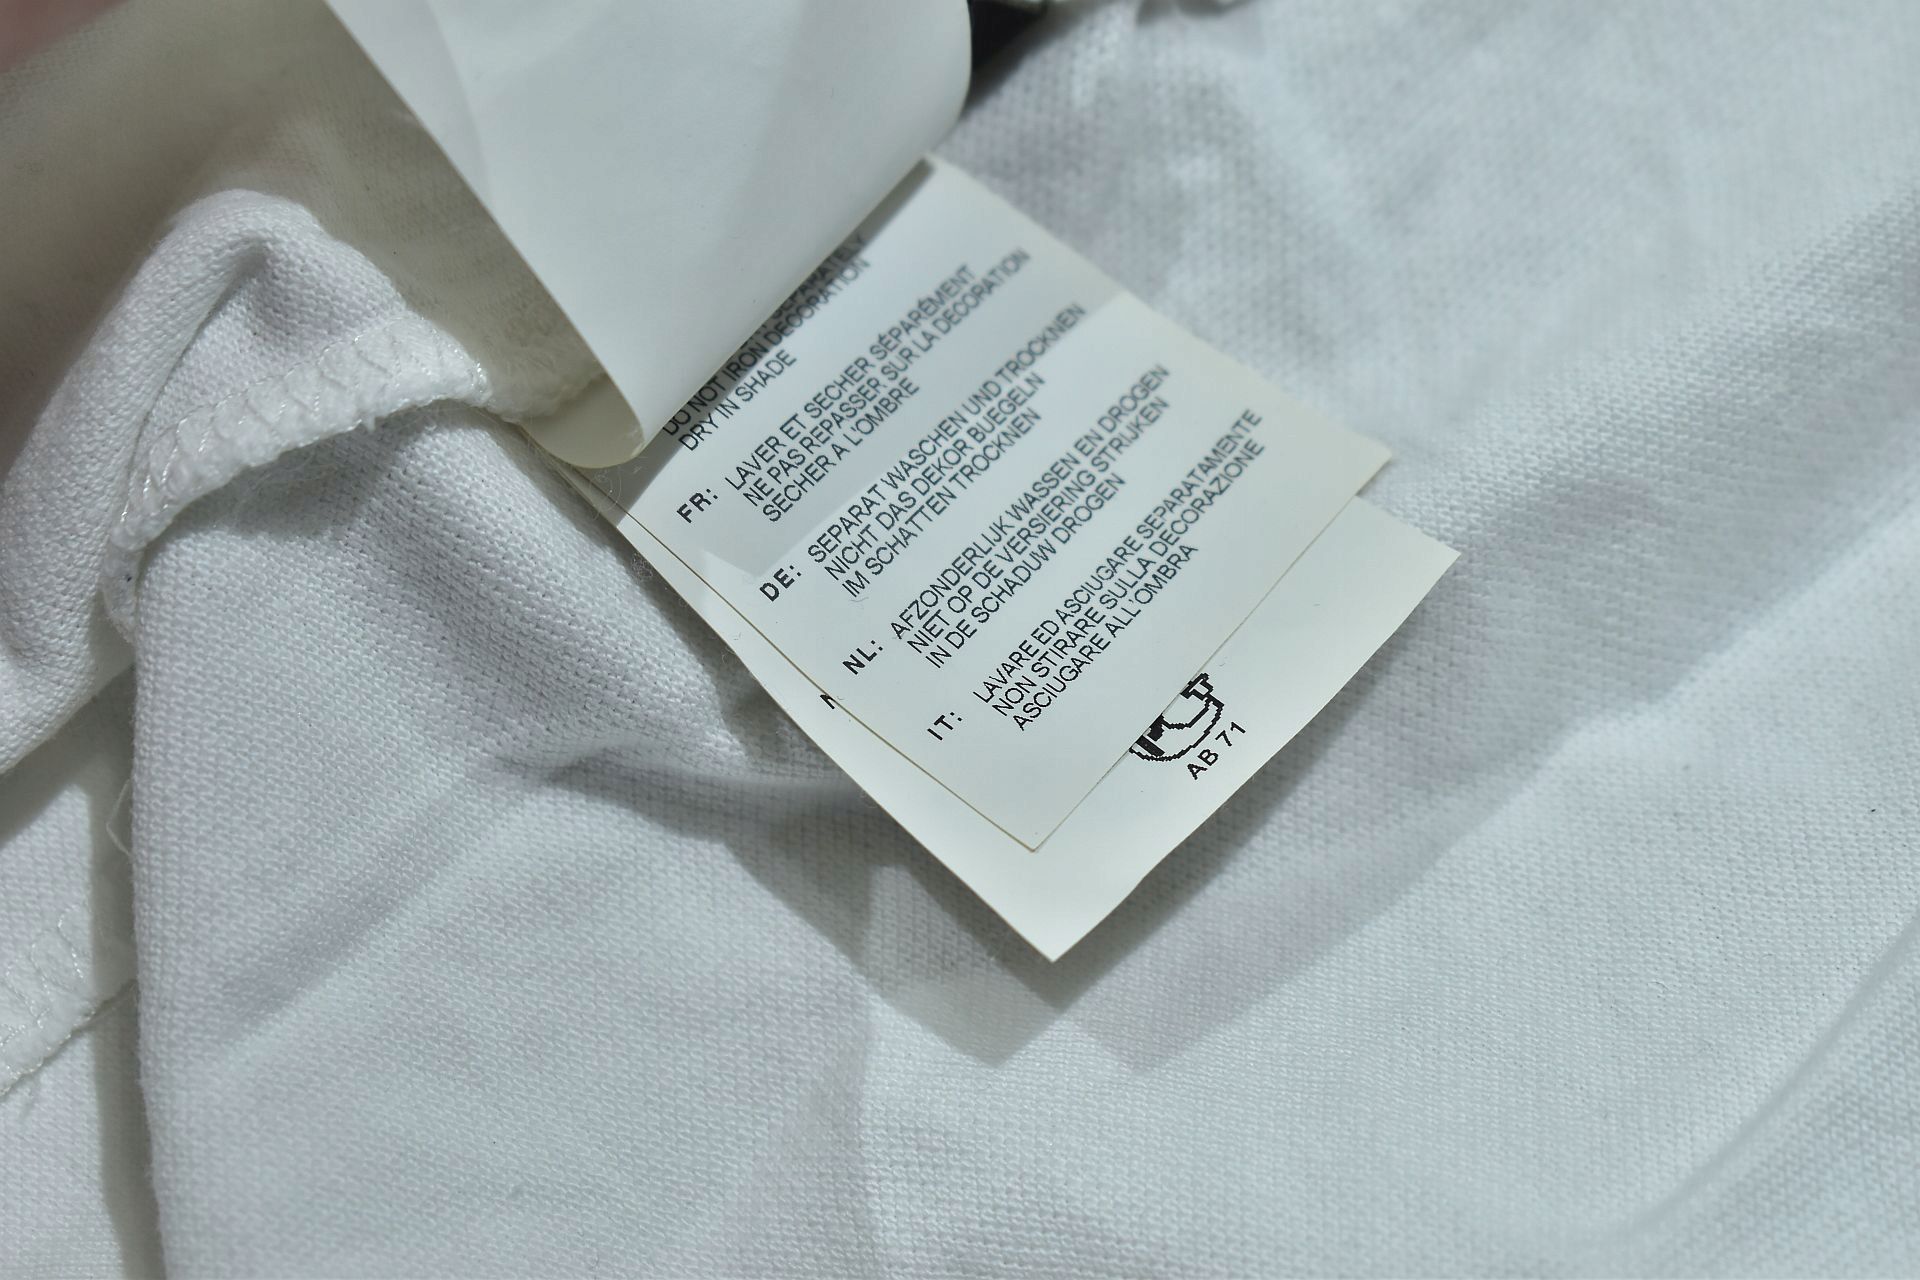 NAPAPAIJRI Biała Koszulka Polo Cotton Pique / XXL